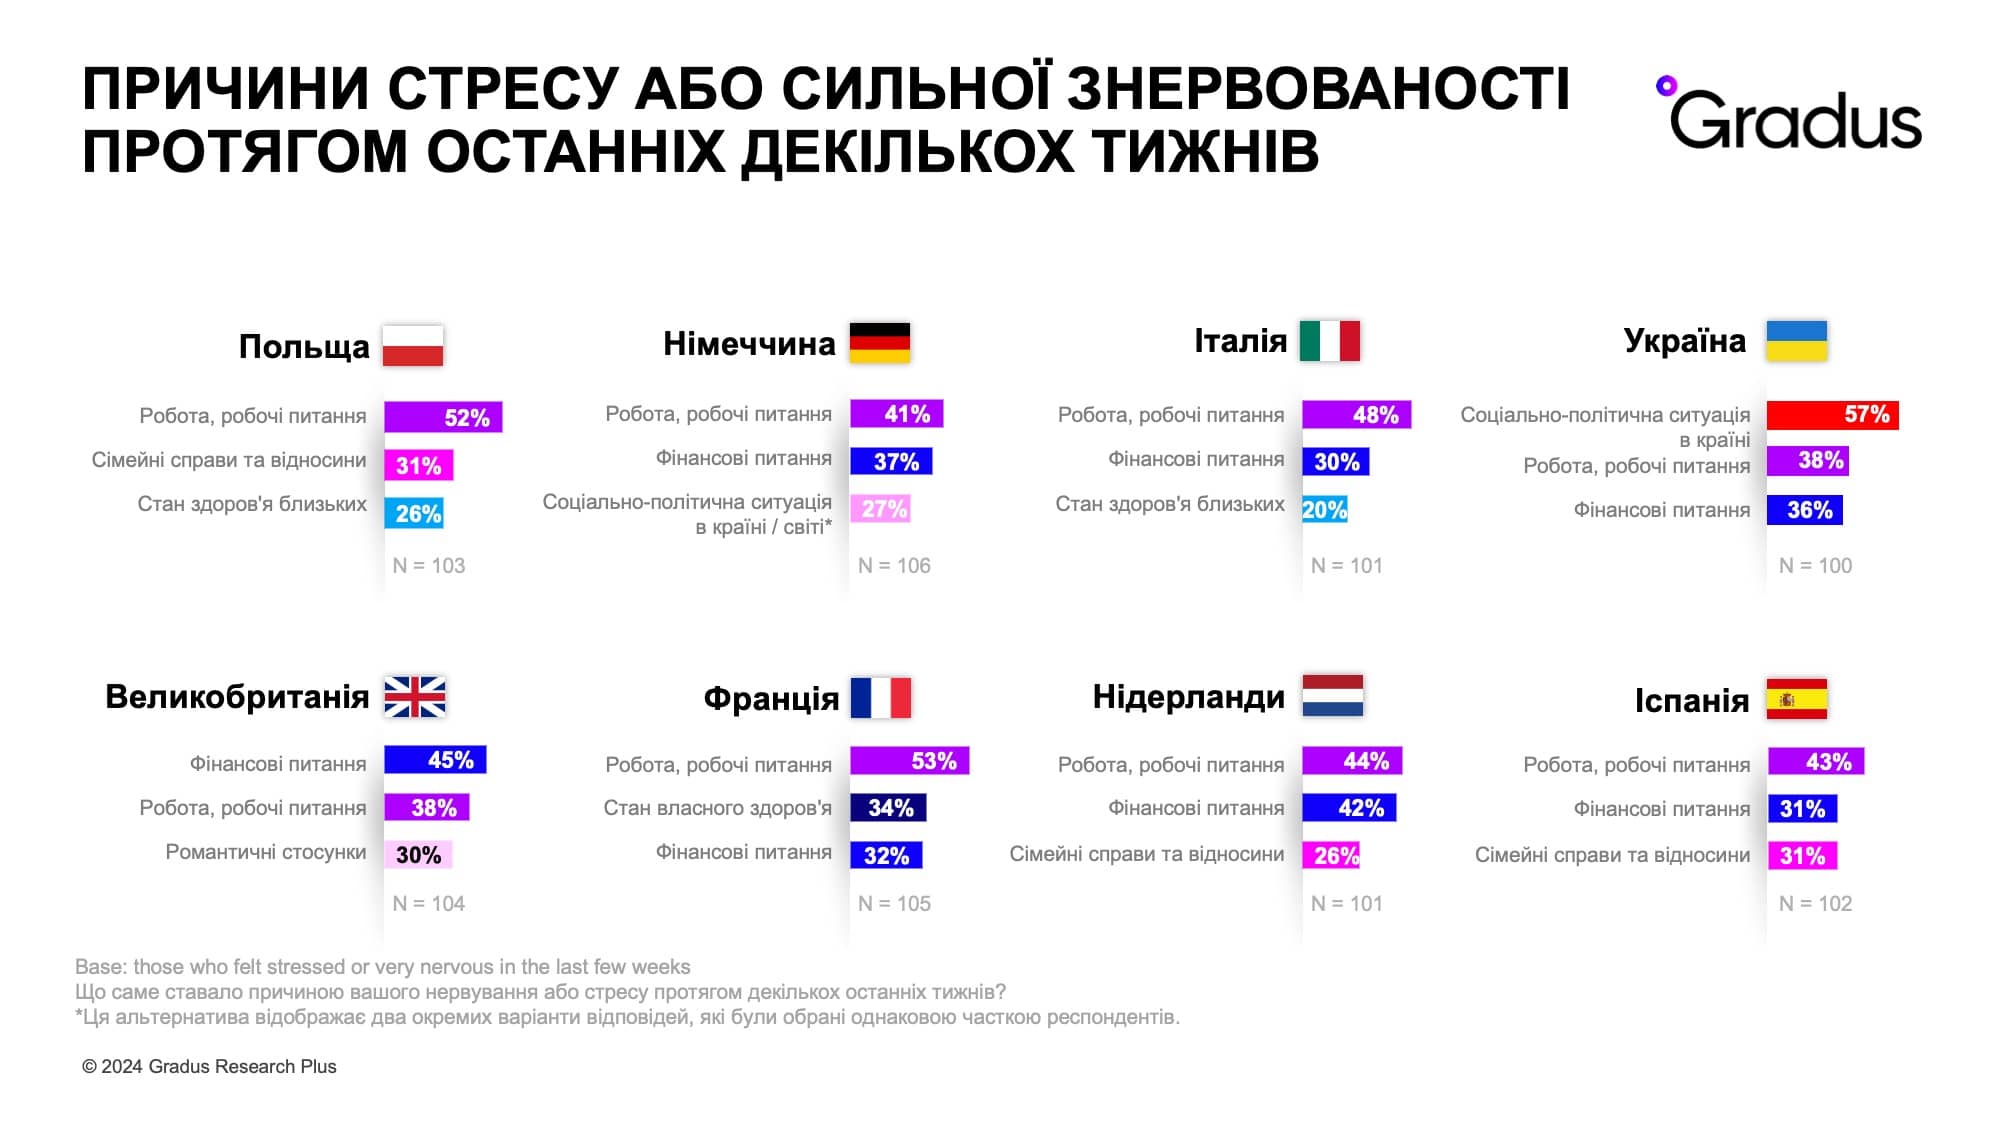  Причины стресса (Украина + Европа)